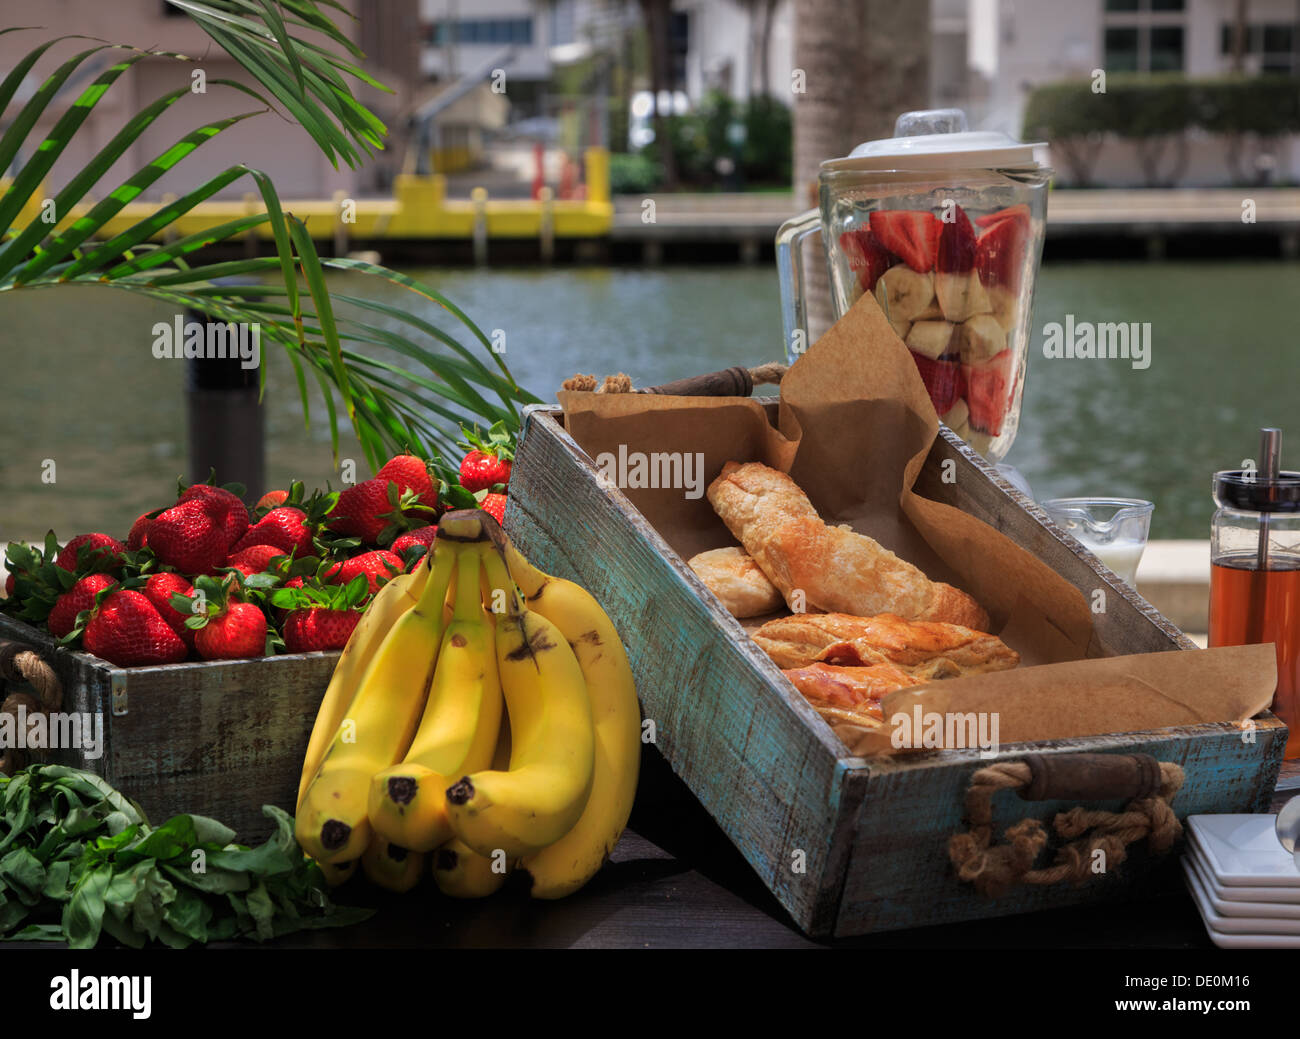 Milieu urbain, petit déjeuner au bord de l'eau. Blender avec des morceaux de fruits sur table avec fort de produits de boulangerie, les fraises et les bananes. Banque D'Images